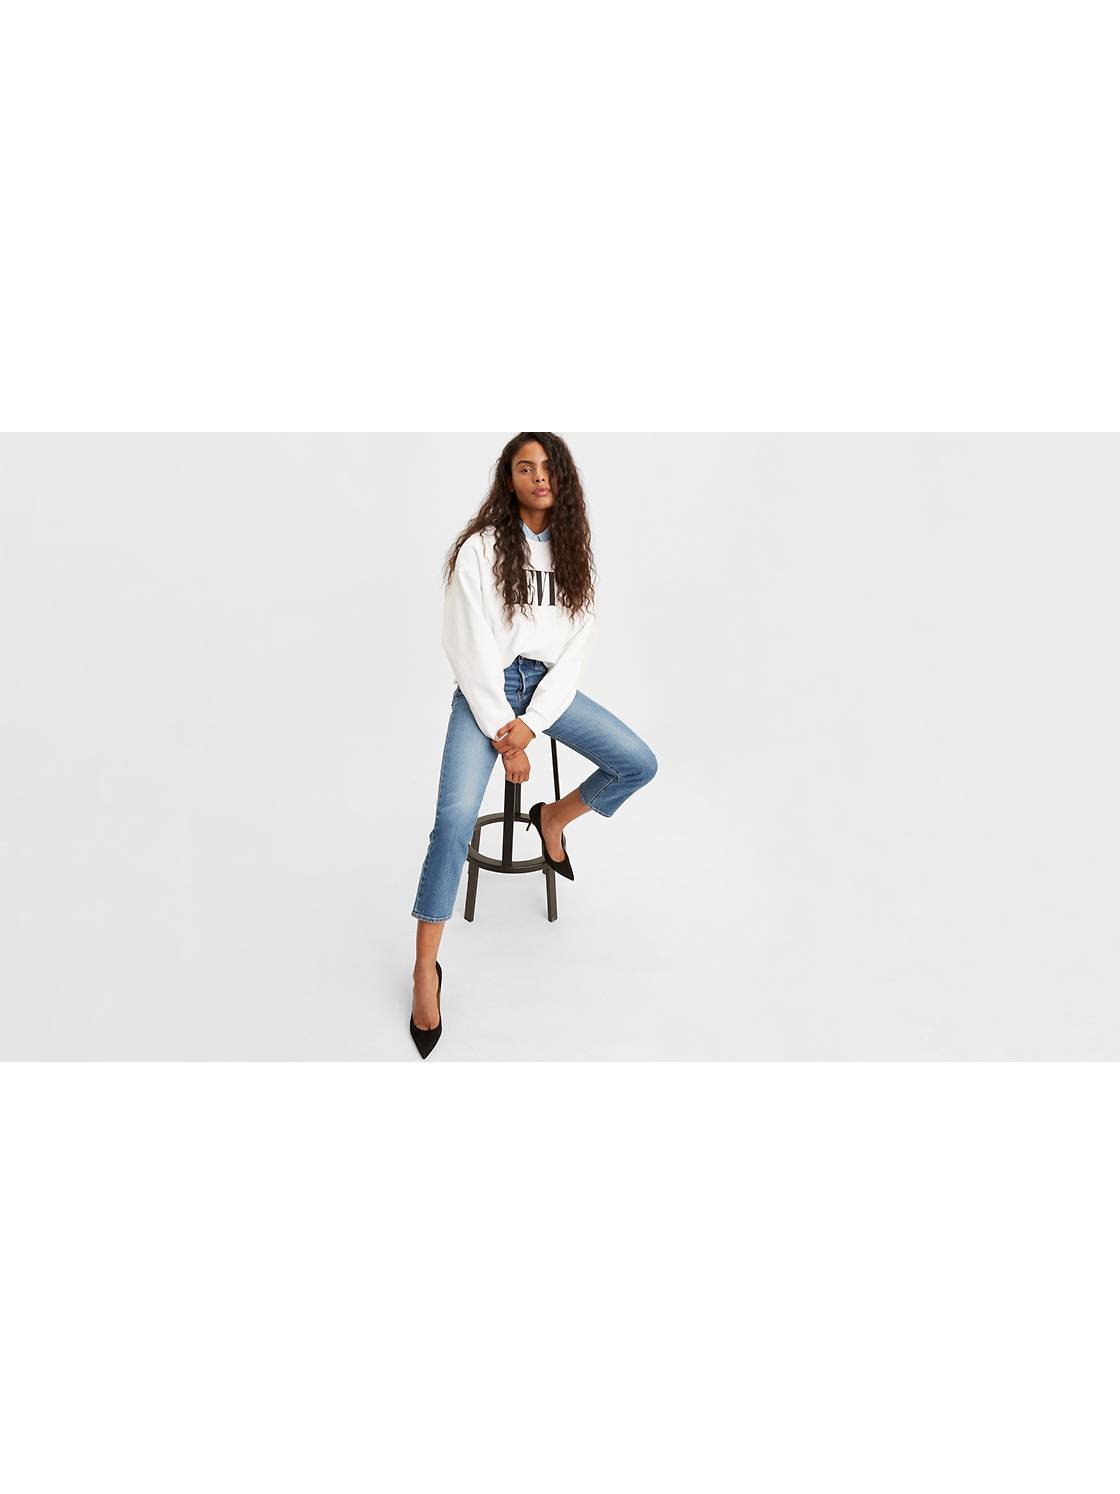 garaje Karu Desarmado High-Waisted Jeans - Women's High-Rise Jeans & Pants | Levi's® US